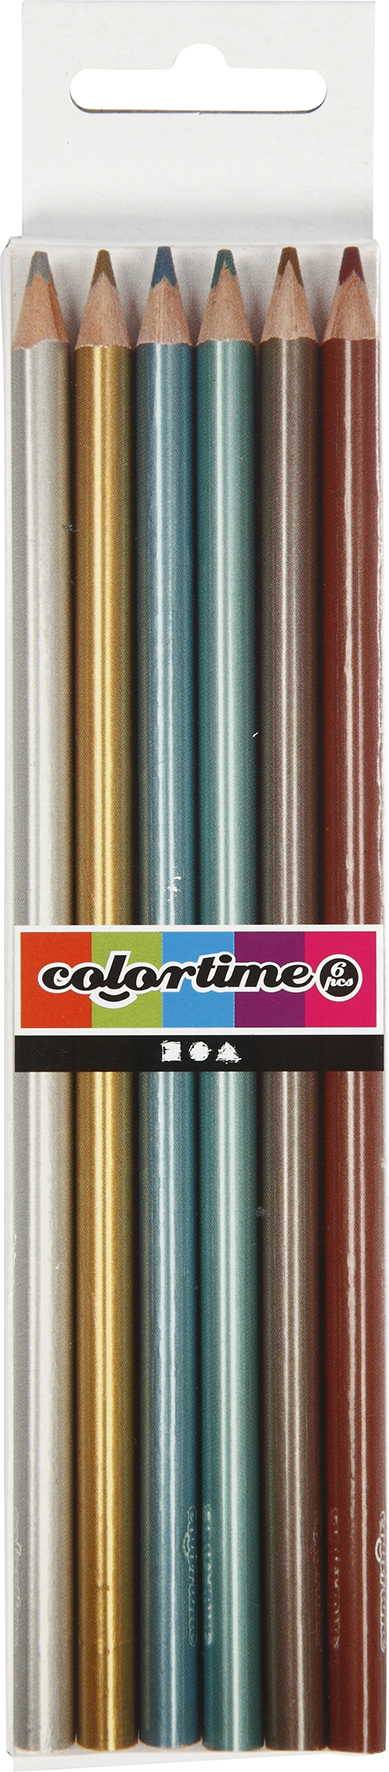 [8100328] Färgpenna metallic 6/fp